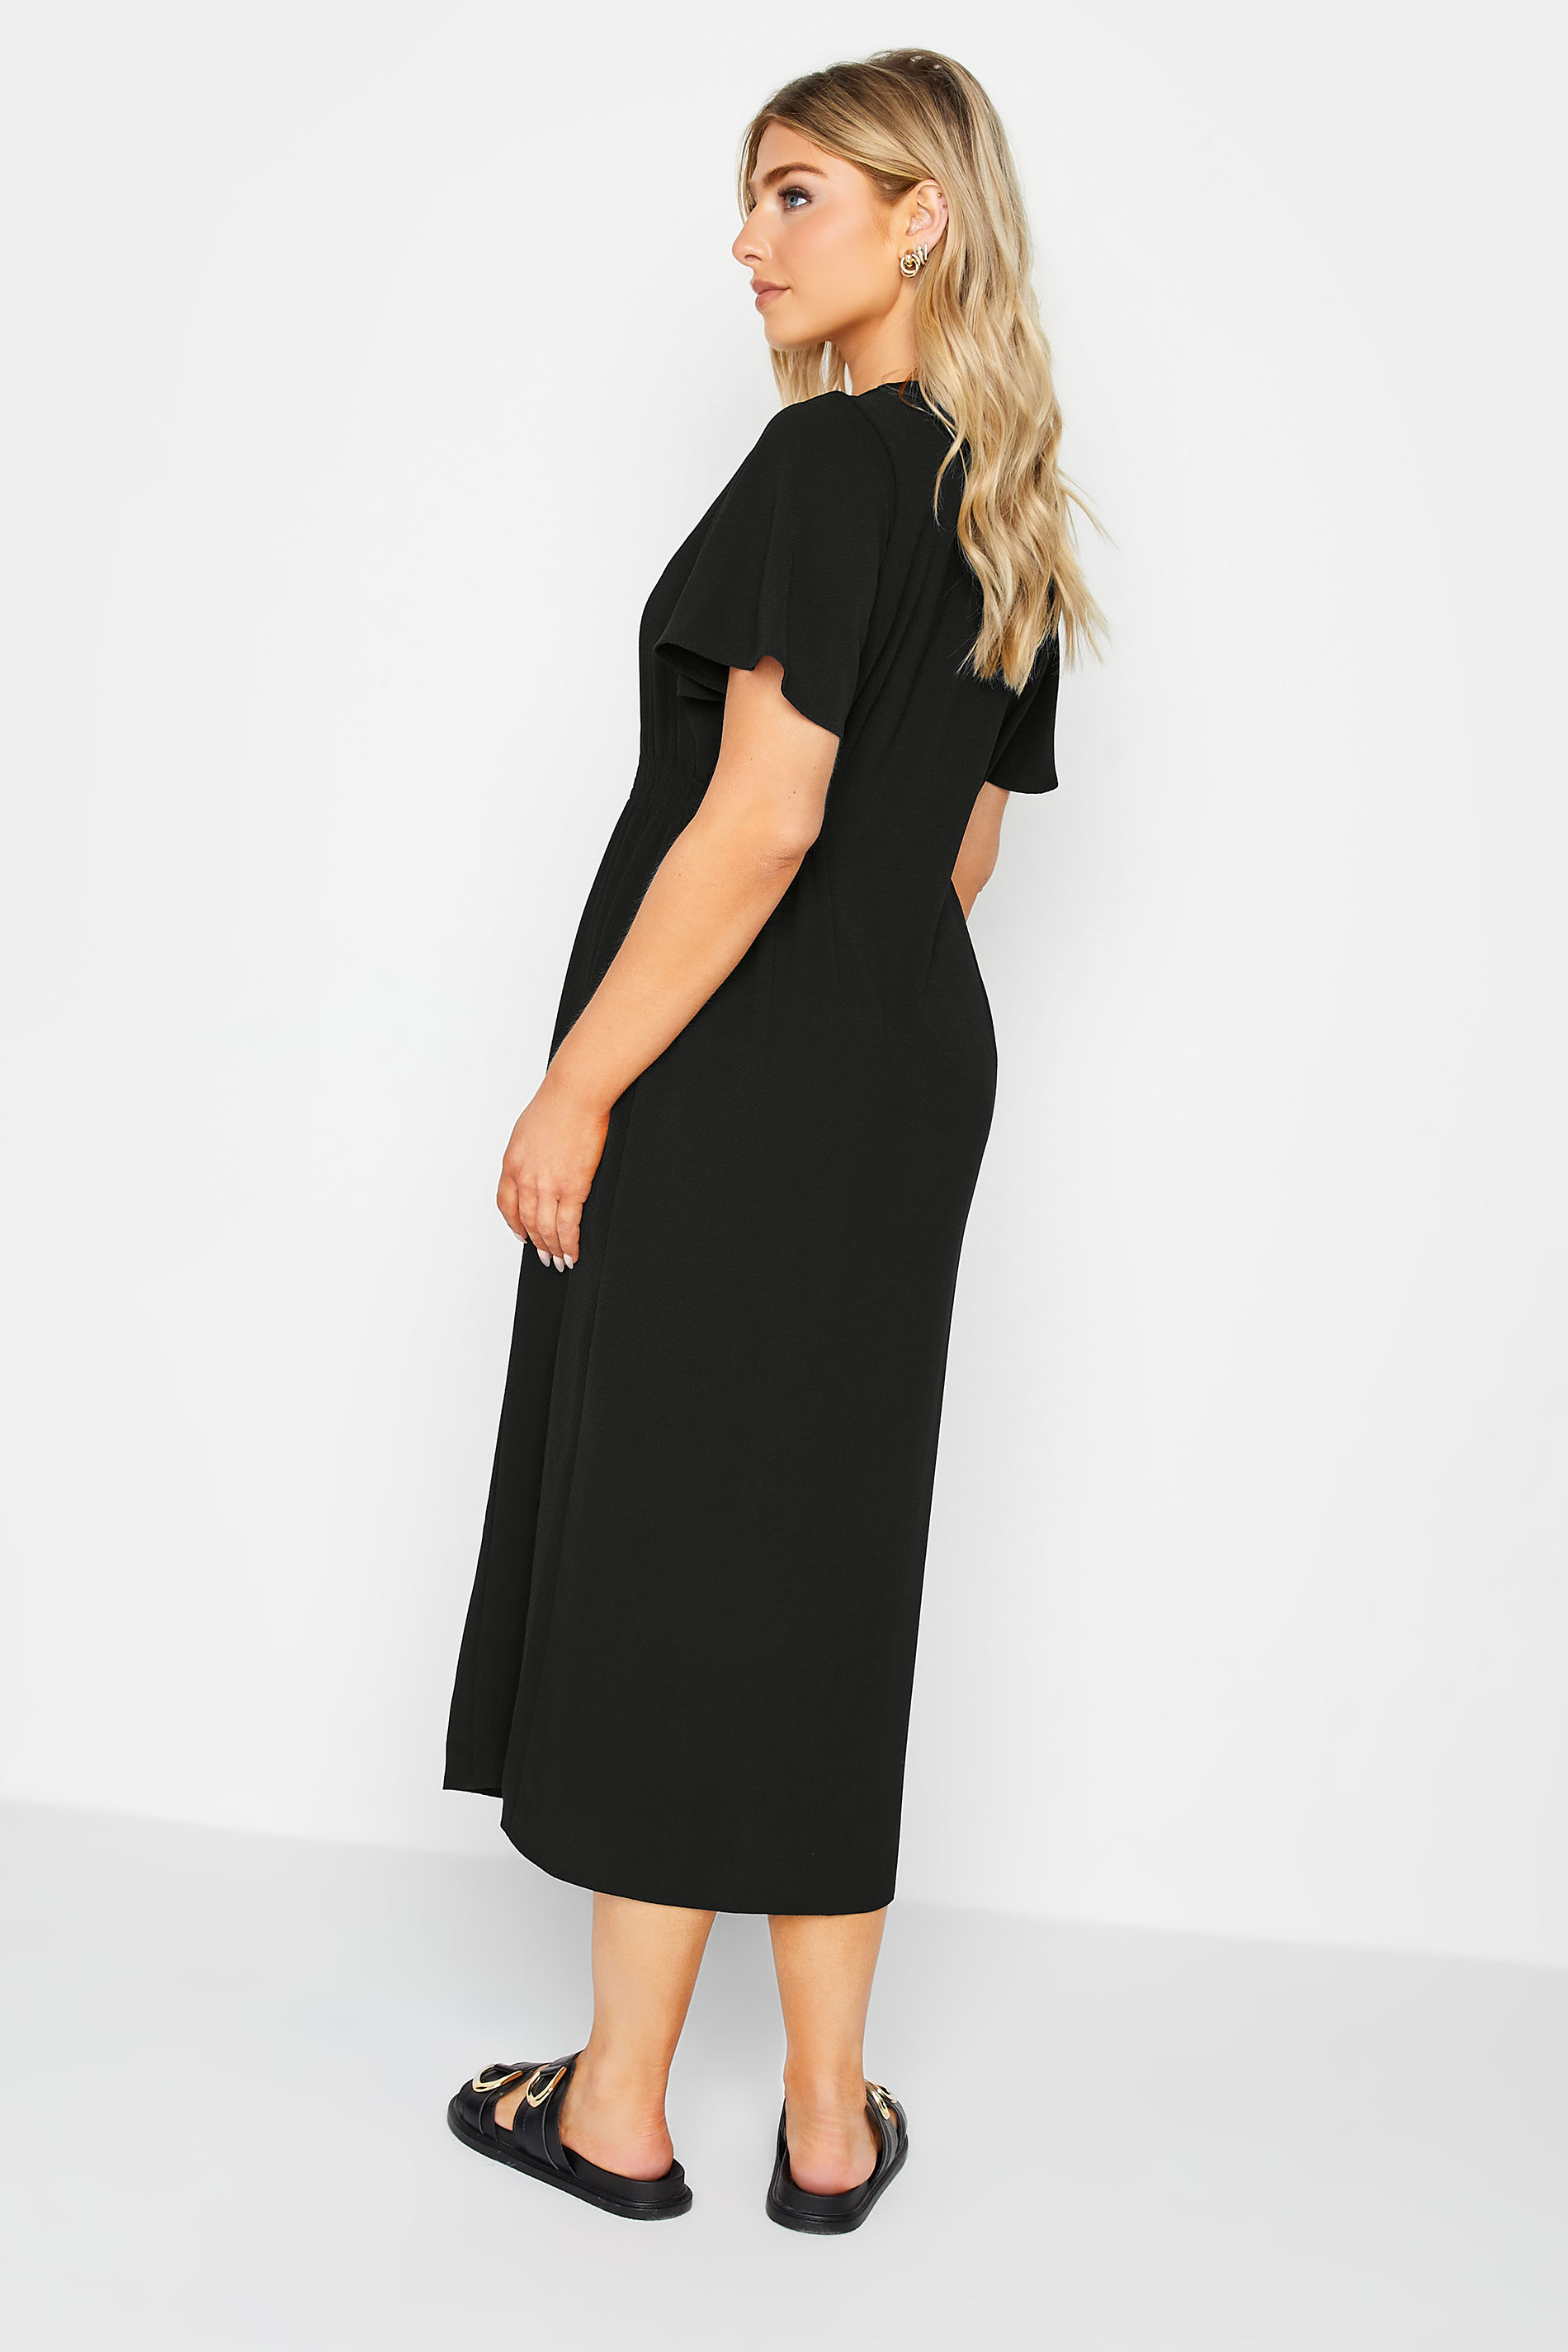 M&Co Black Shirred Waist Button Through Midi Dress | M&Co 3